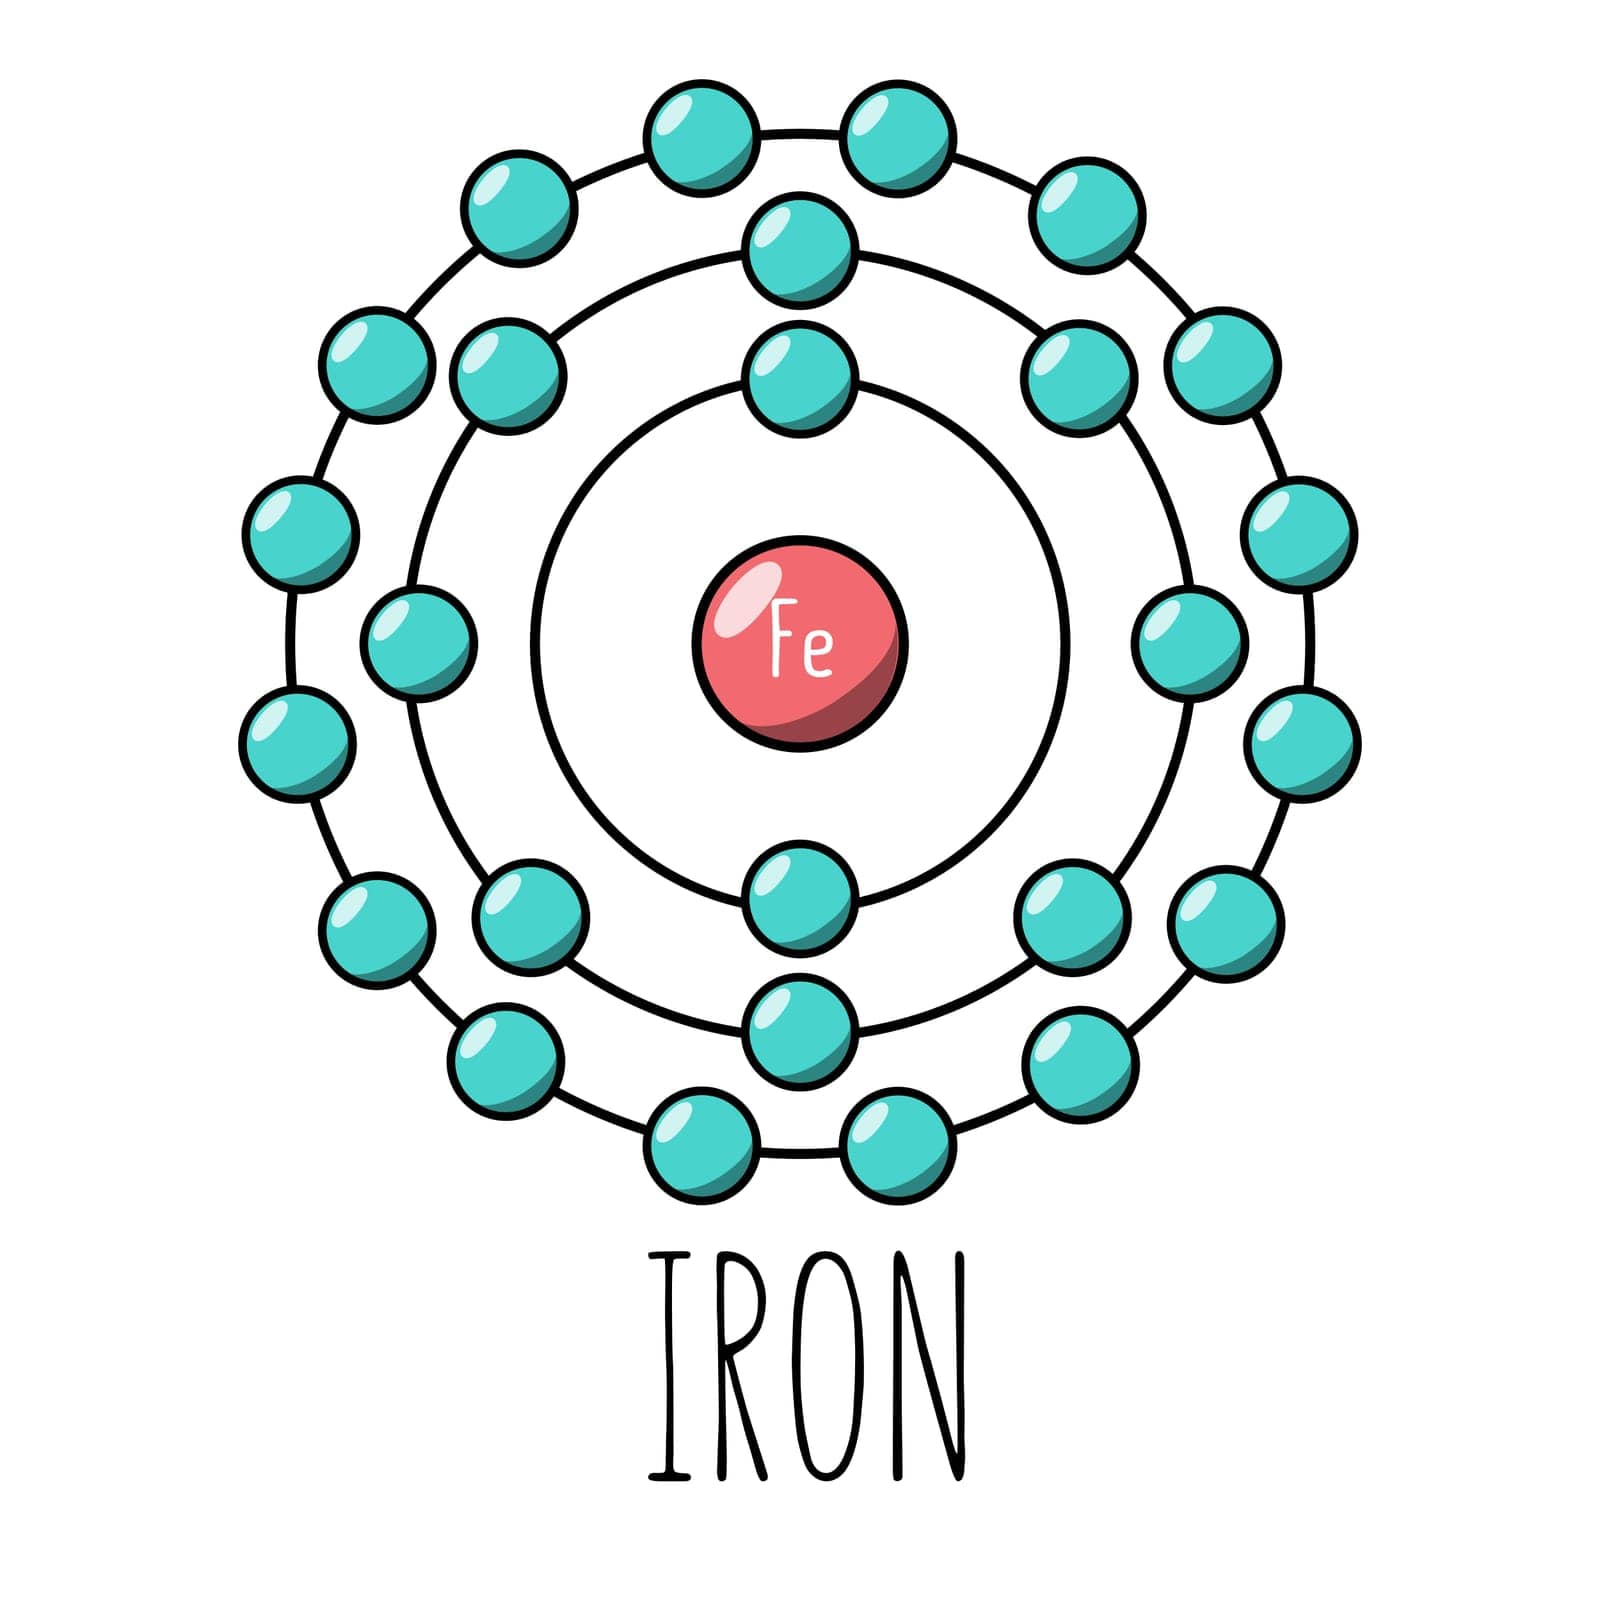 Iron atom Bohr model by AnnaMarin